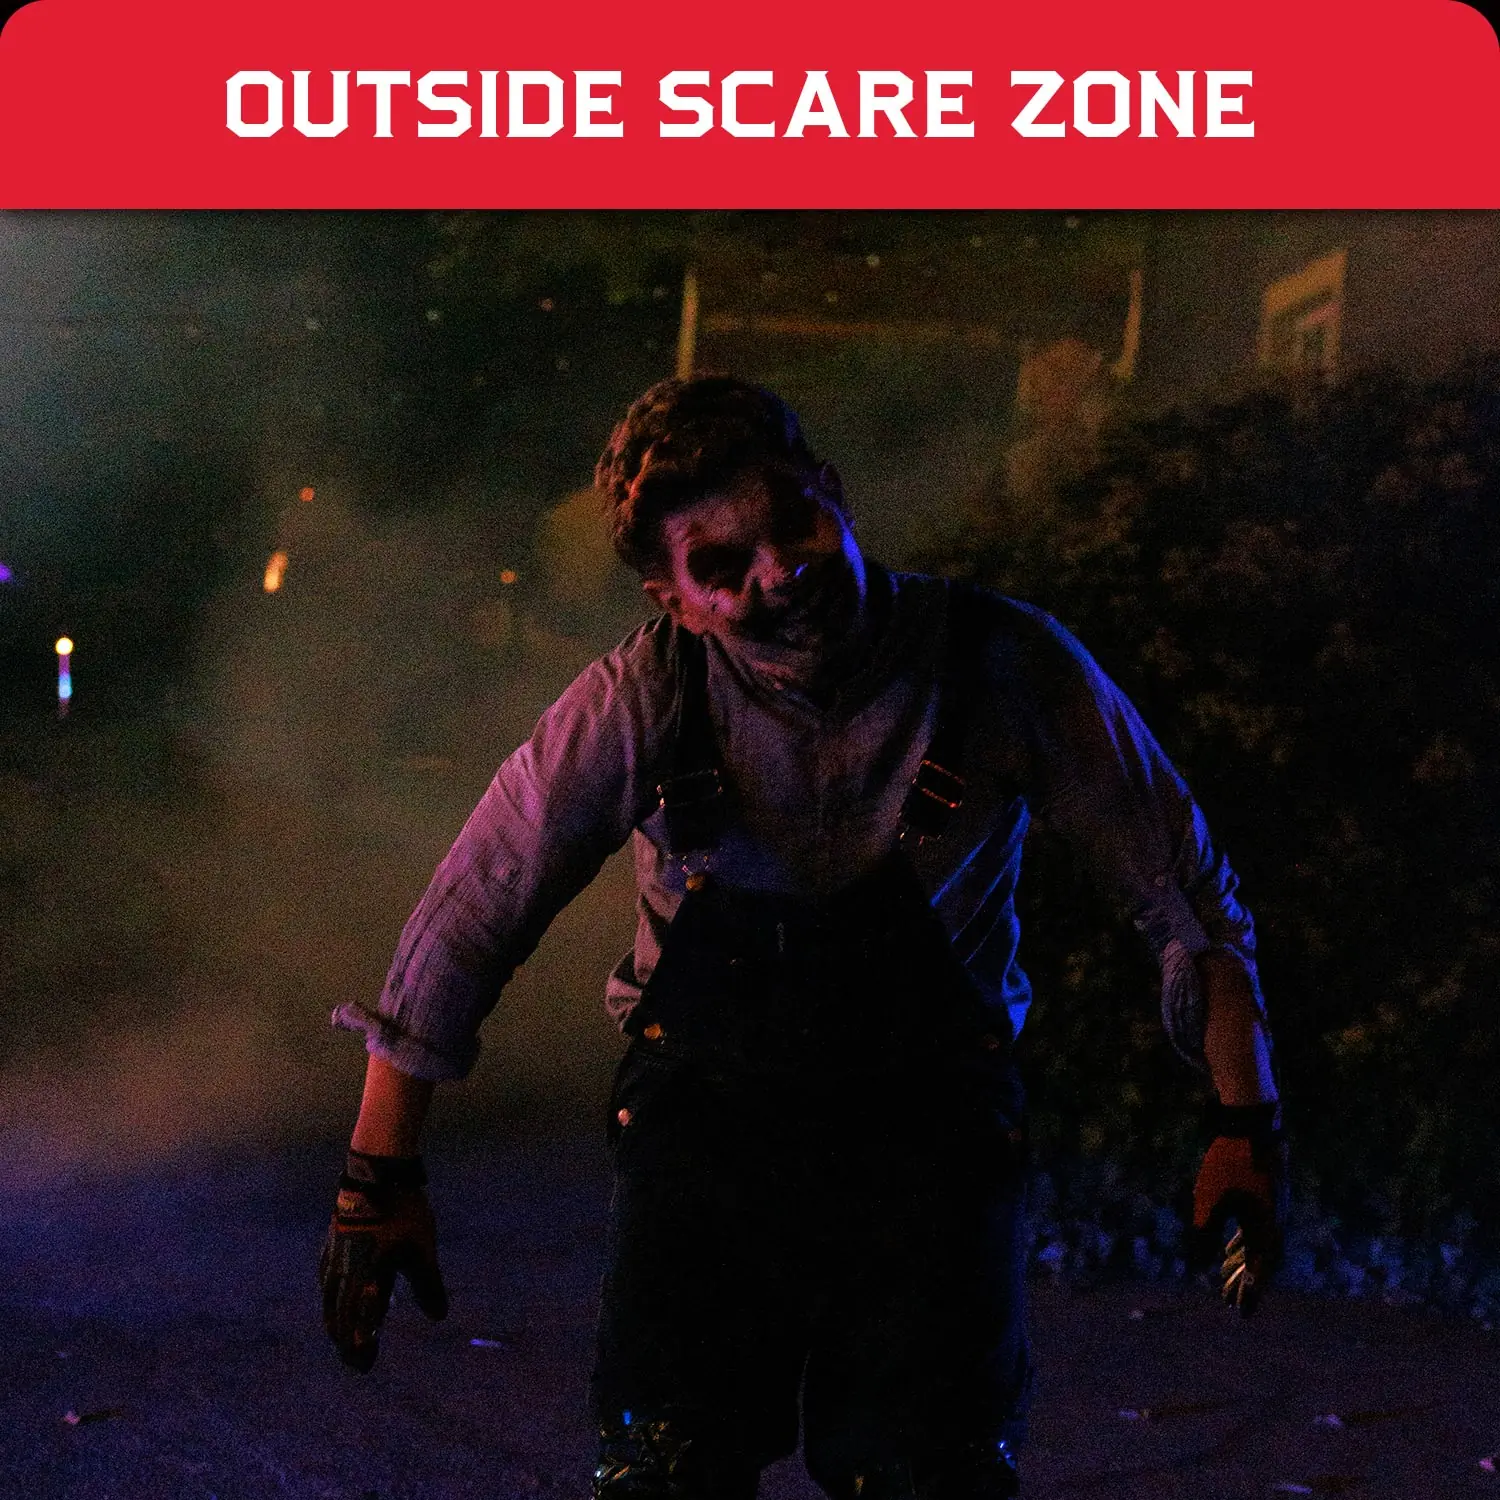 outdoor scare zone halloween